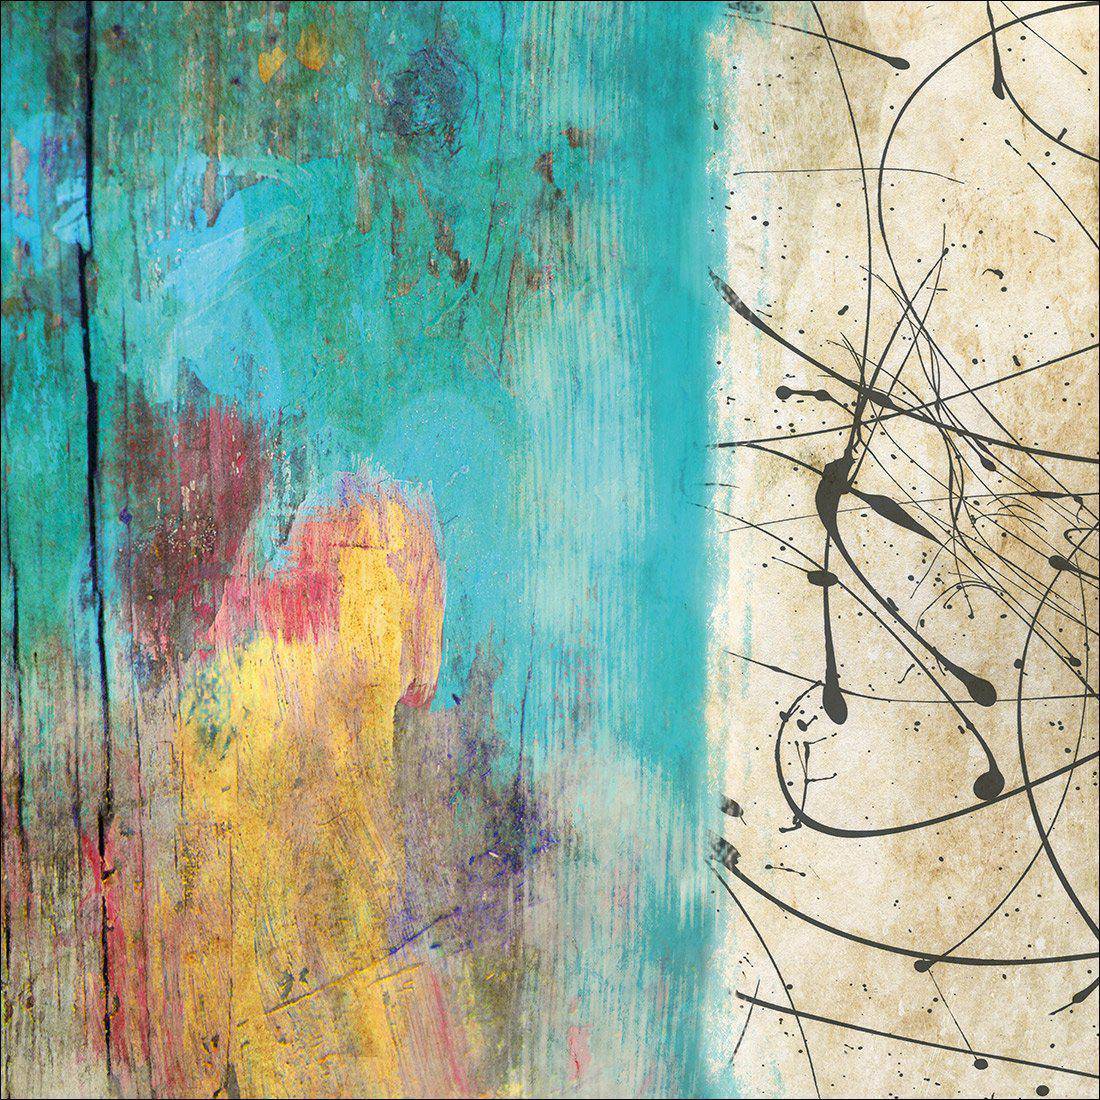 Painted Grunge Splatter Canvas Art-Canvas-Wall Art Designs-30x30cm-Canvas - No Frame-Wall Art Designs